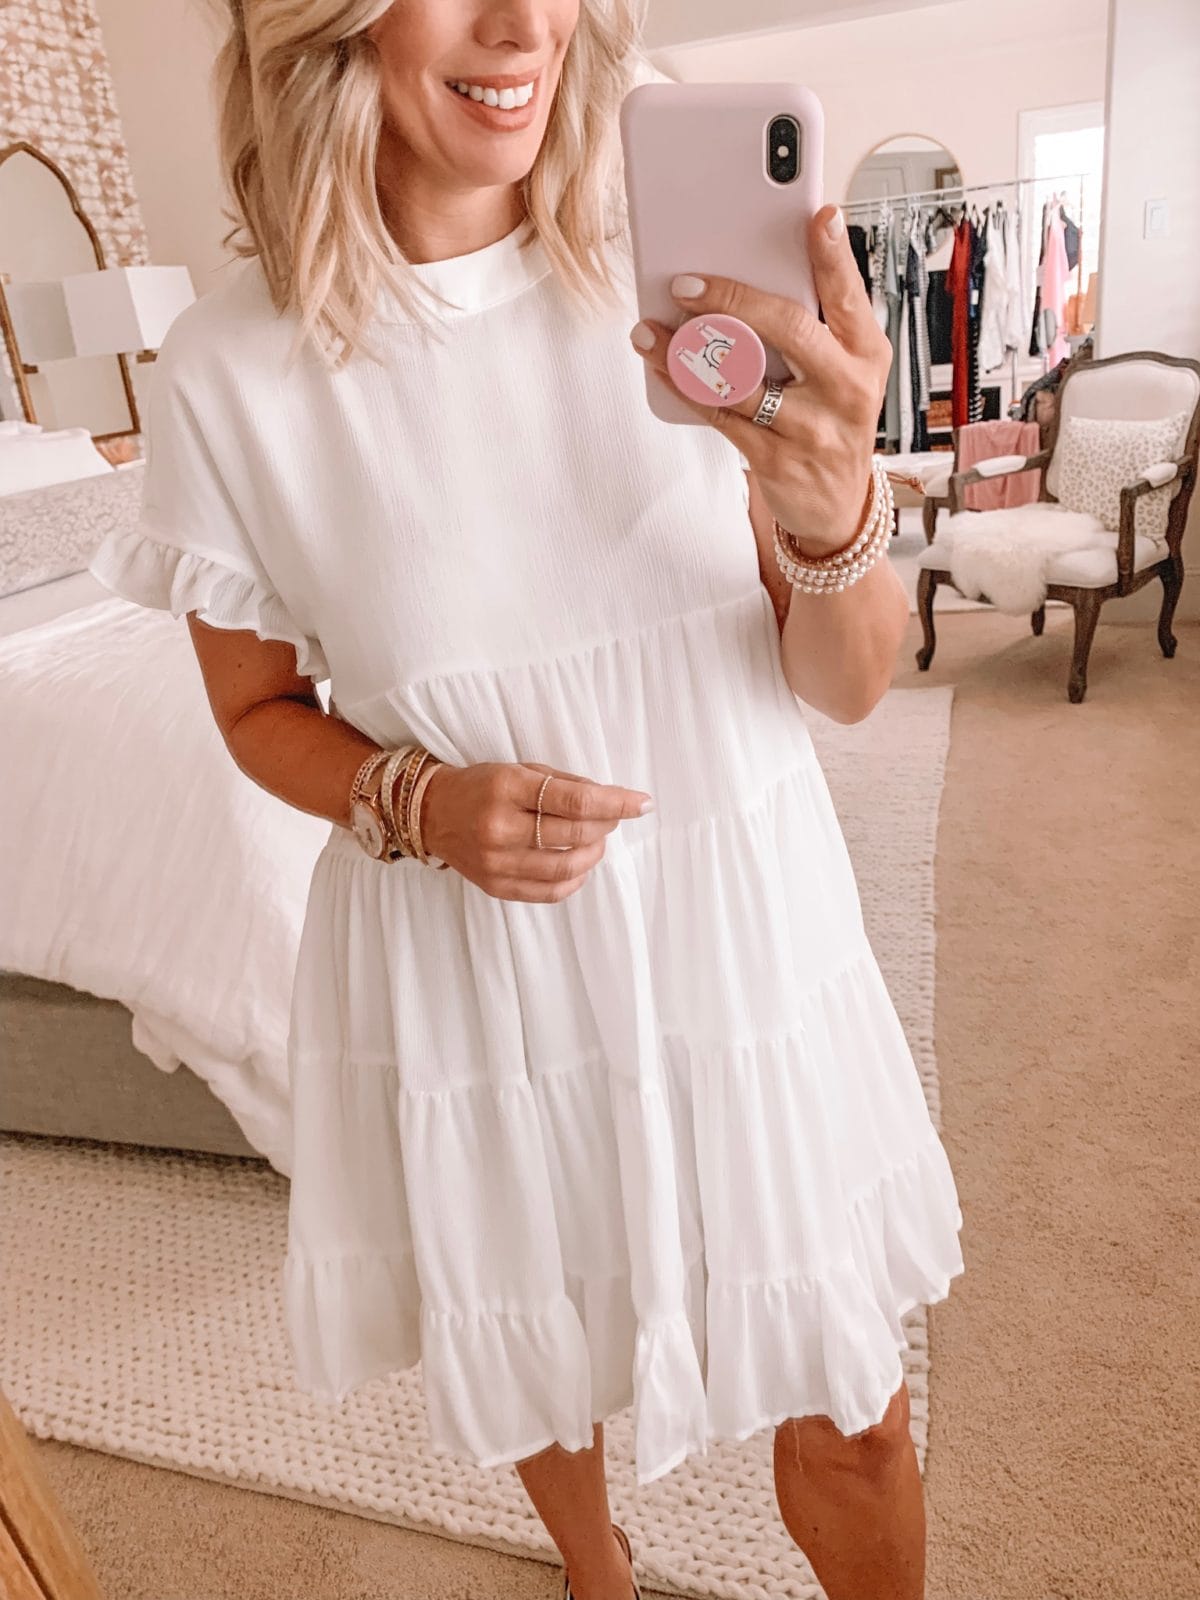 Amazon Fashion Haul - Short Sleeve White Dress